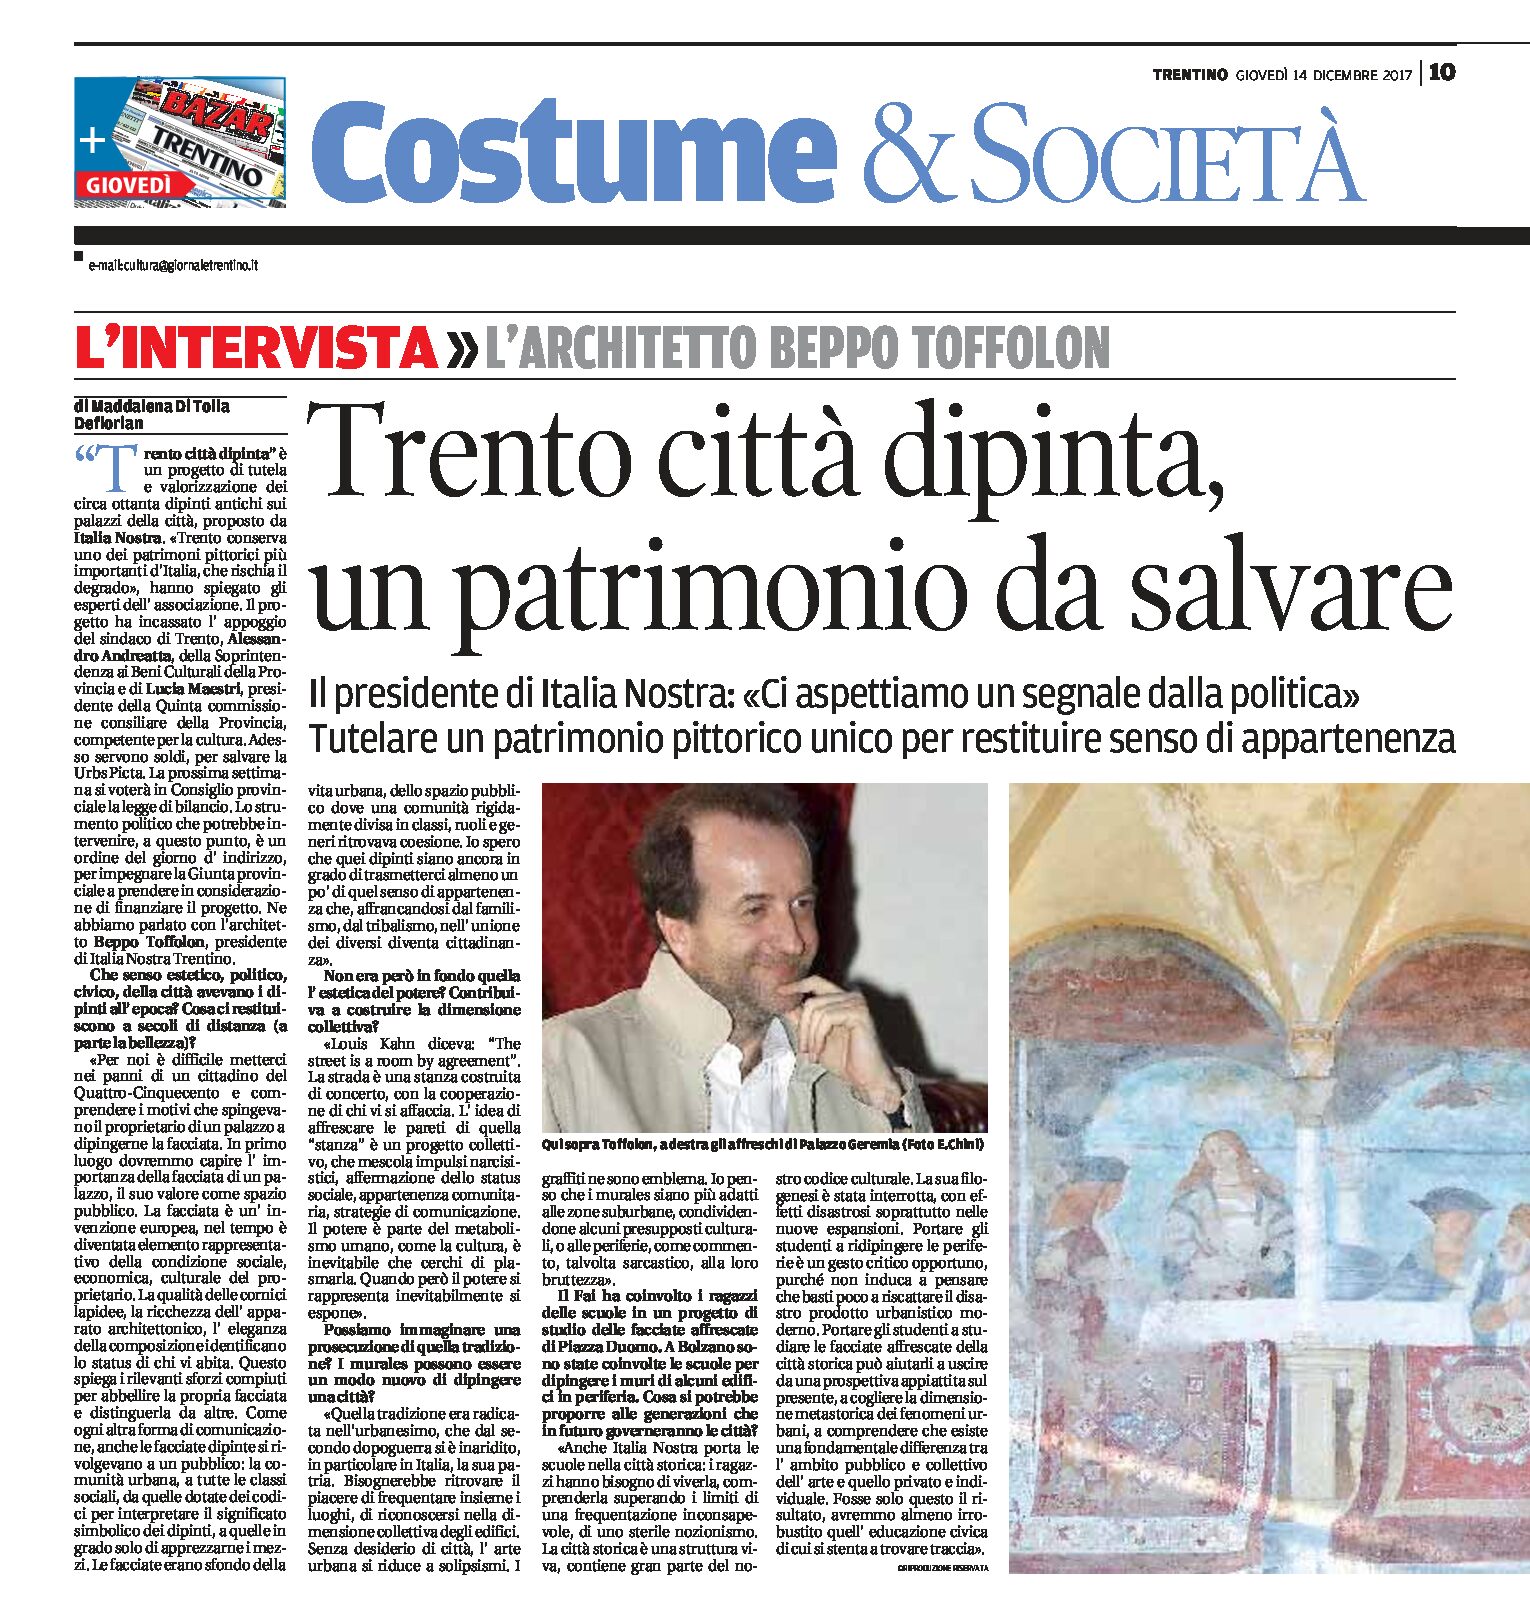 Trento città dipinta: Italia Nostra “un patrimonio da salvare”